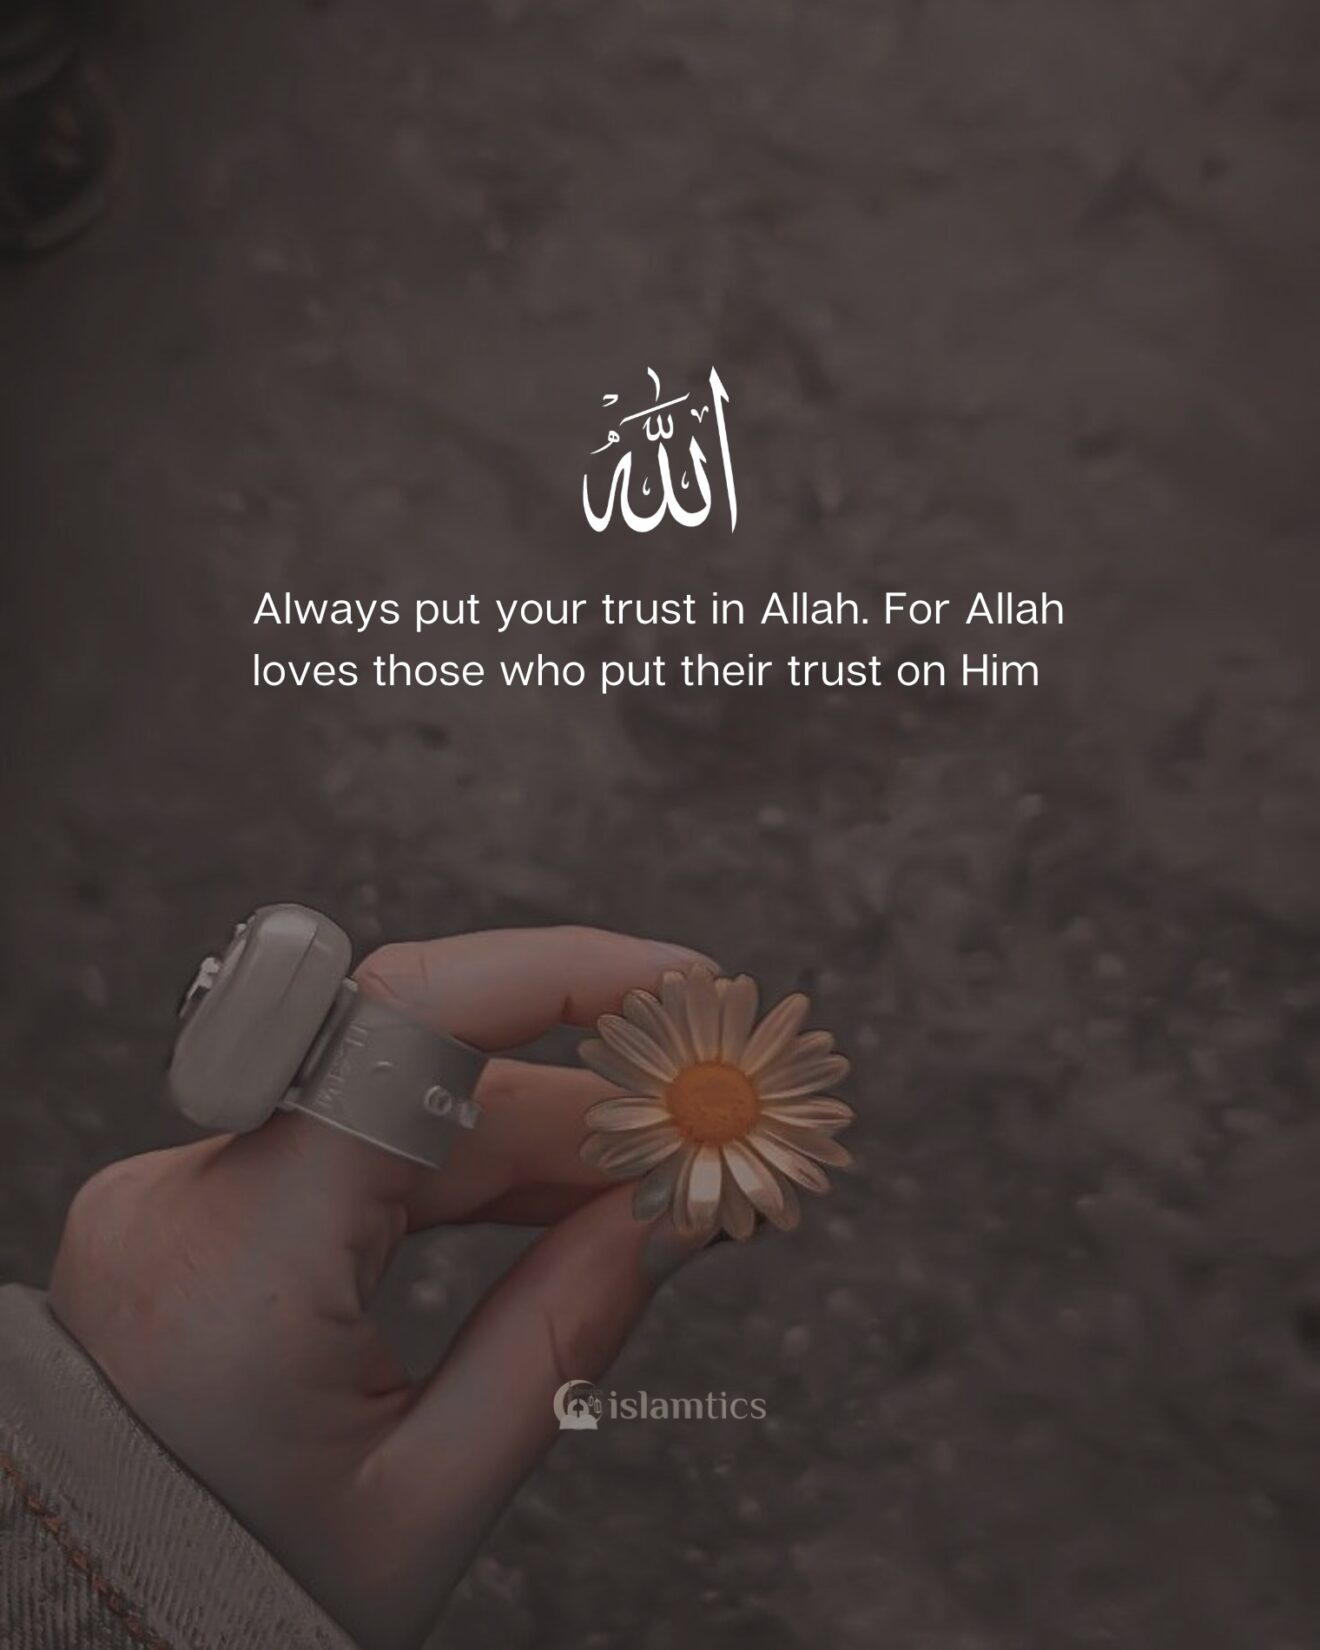  Always put your trust in Allah.